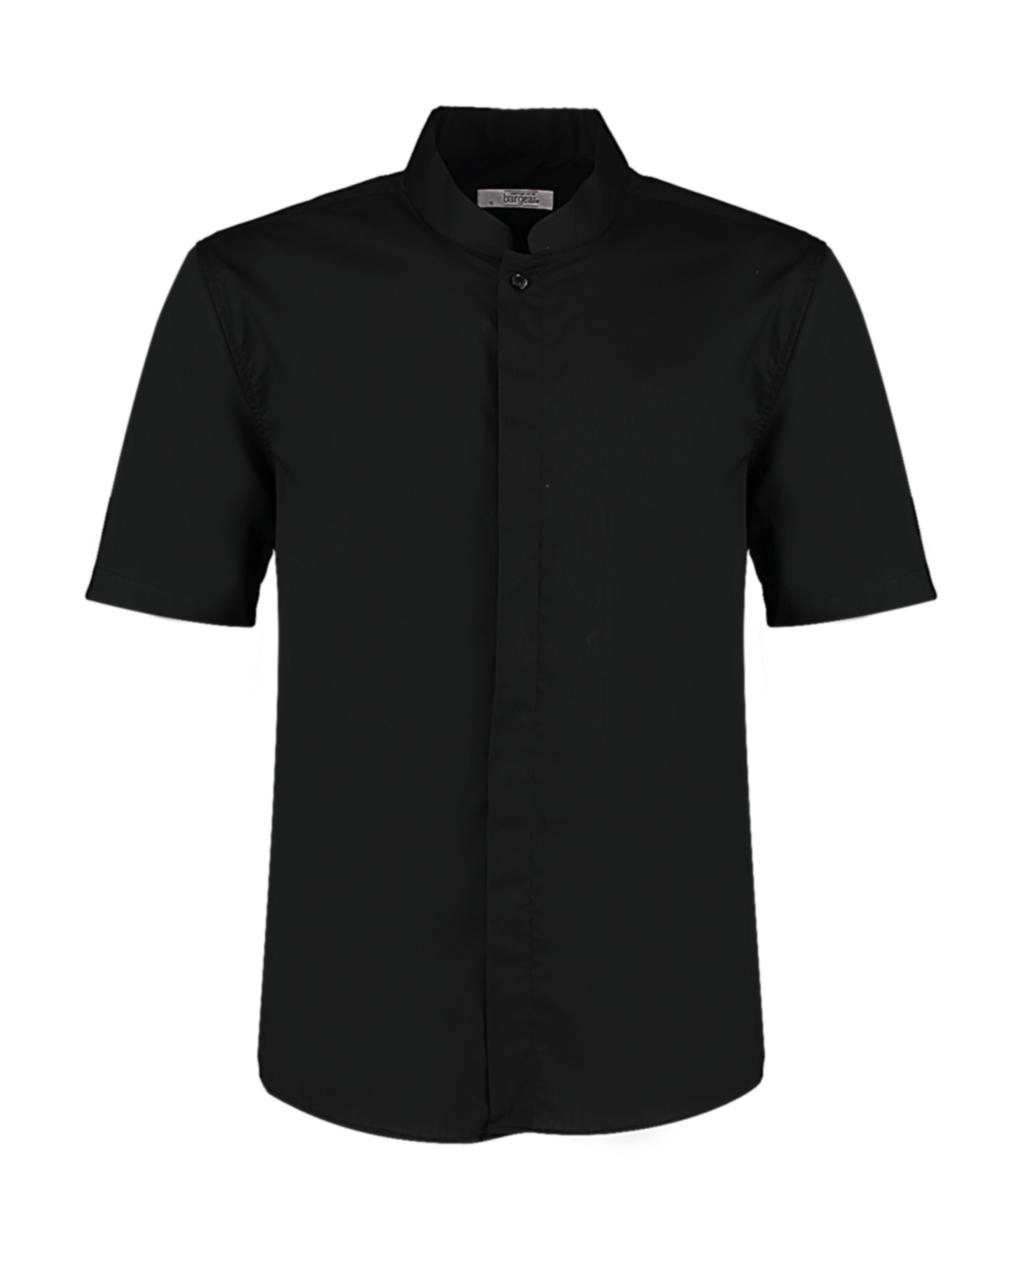 Tailored Fit Mandarin Collar Shirt SSL zum Besticken und Bedrucken in der Farbe Black mit Ihren Logo, Schriftzug oder Motiv.